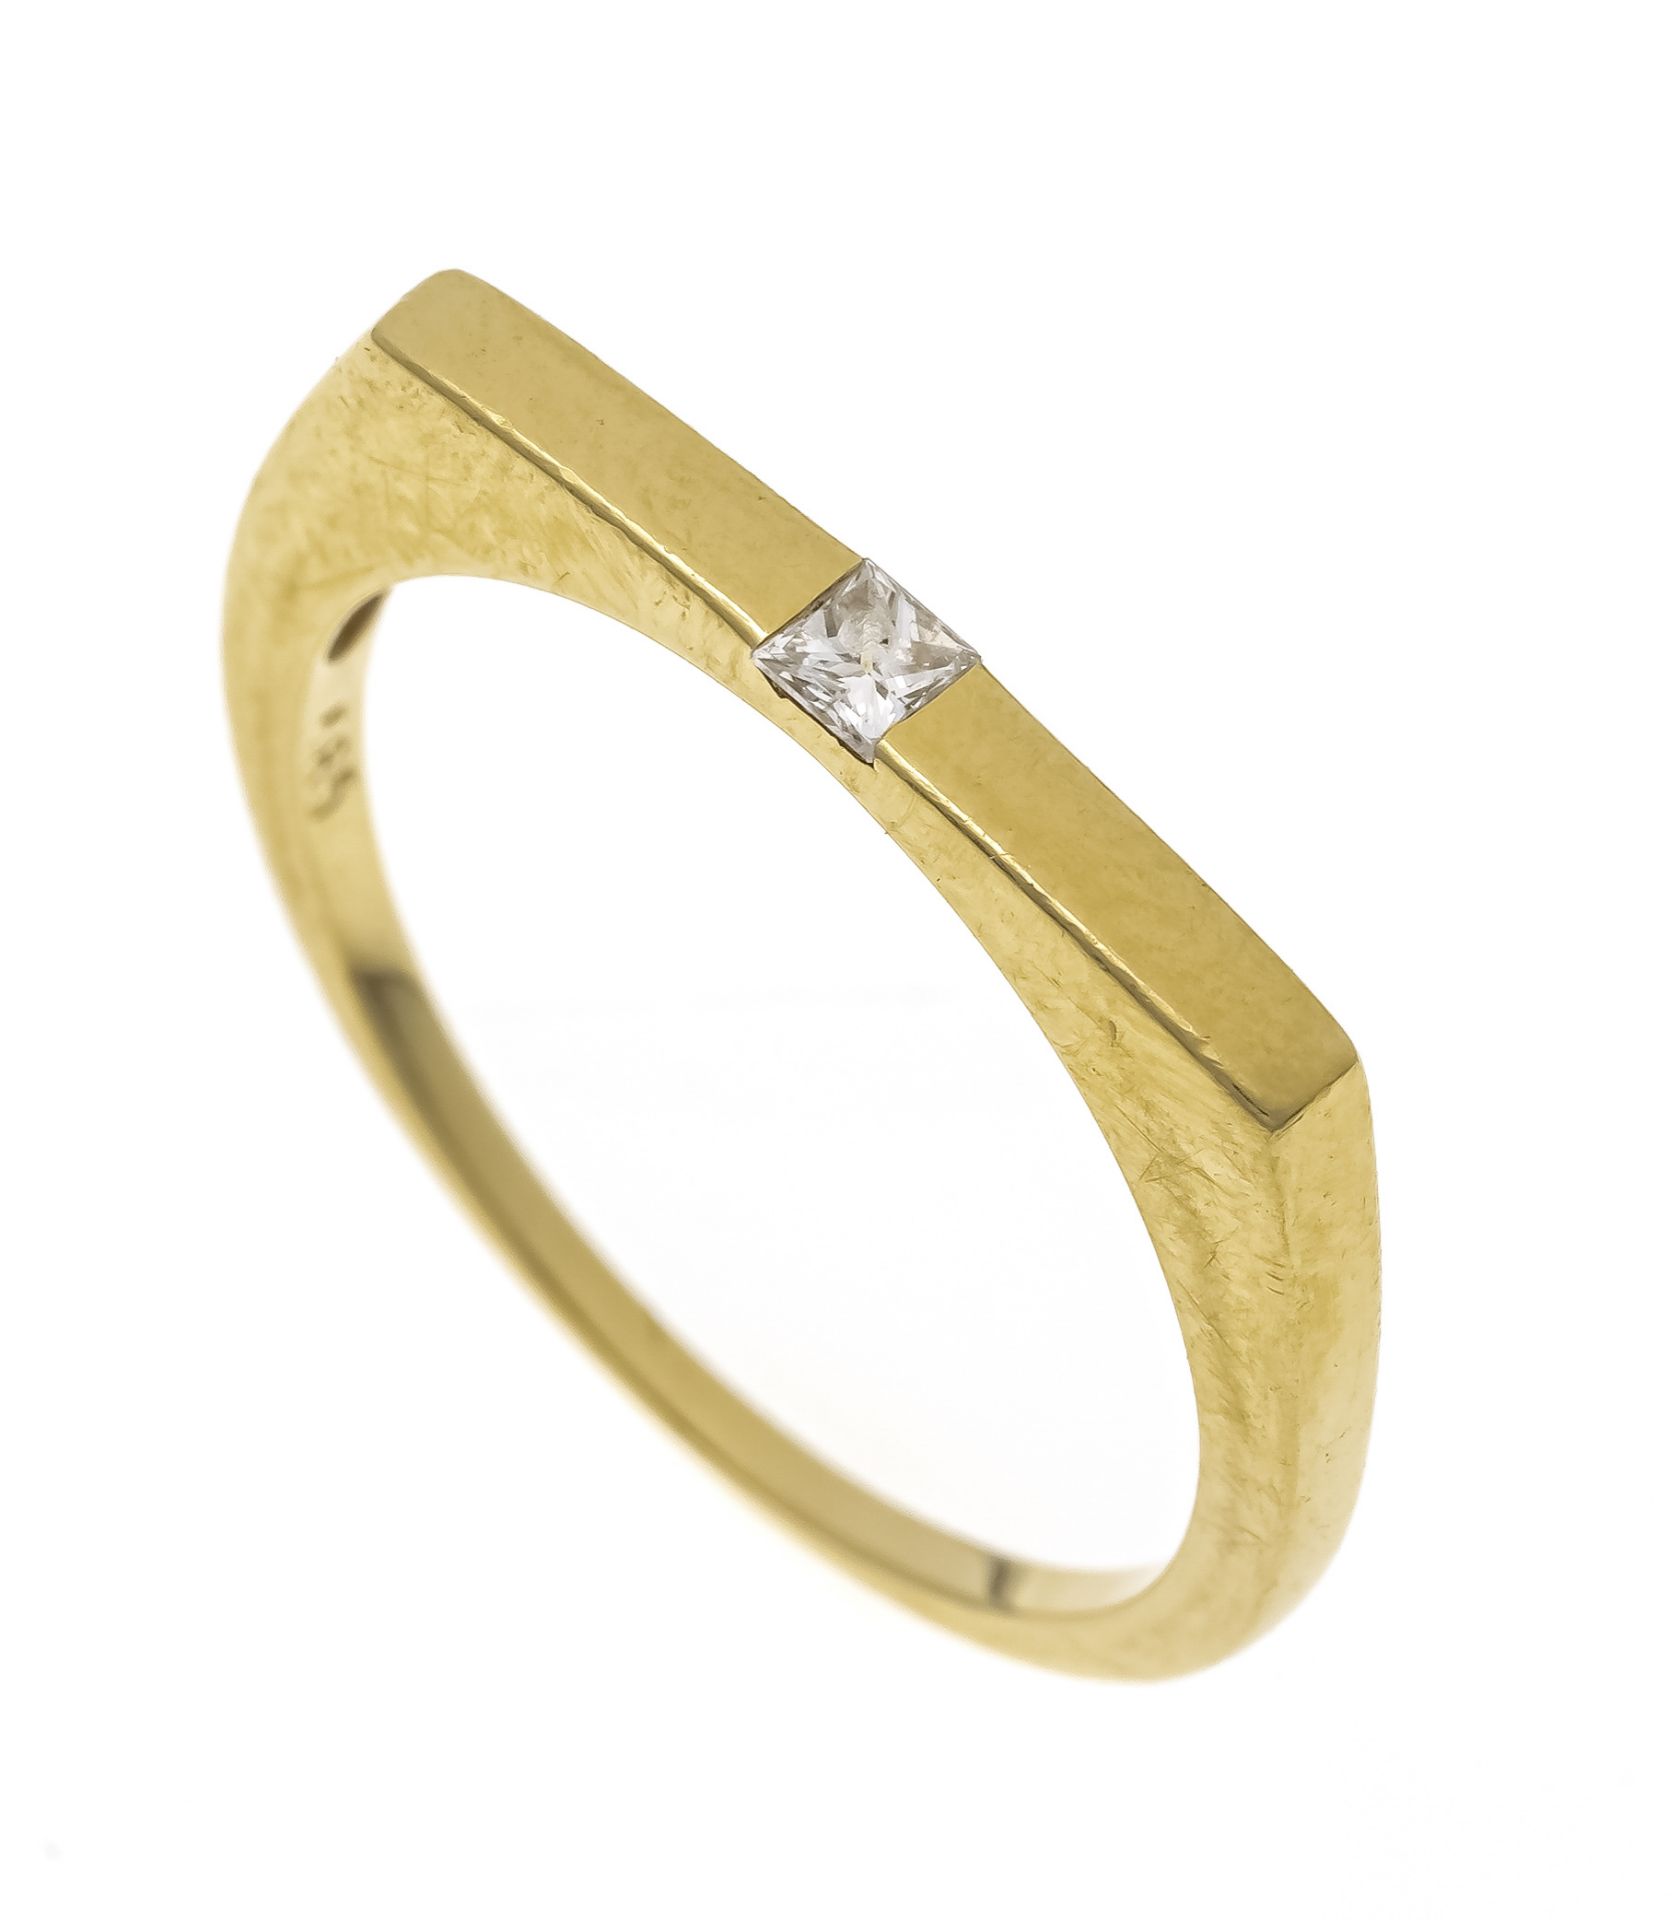 Diamond ring GG 585/000 with one princess diamond 0.057 ct (hallmarked) W/VS-SI, RG 53, 2.1 g